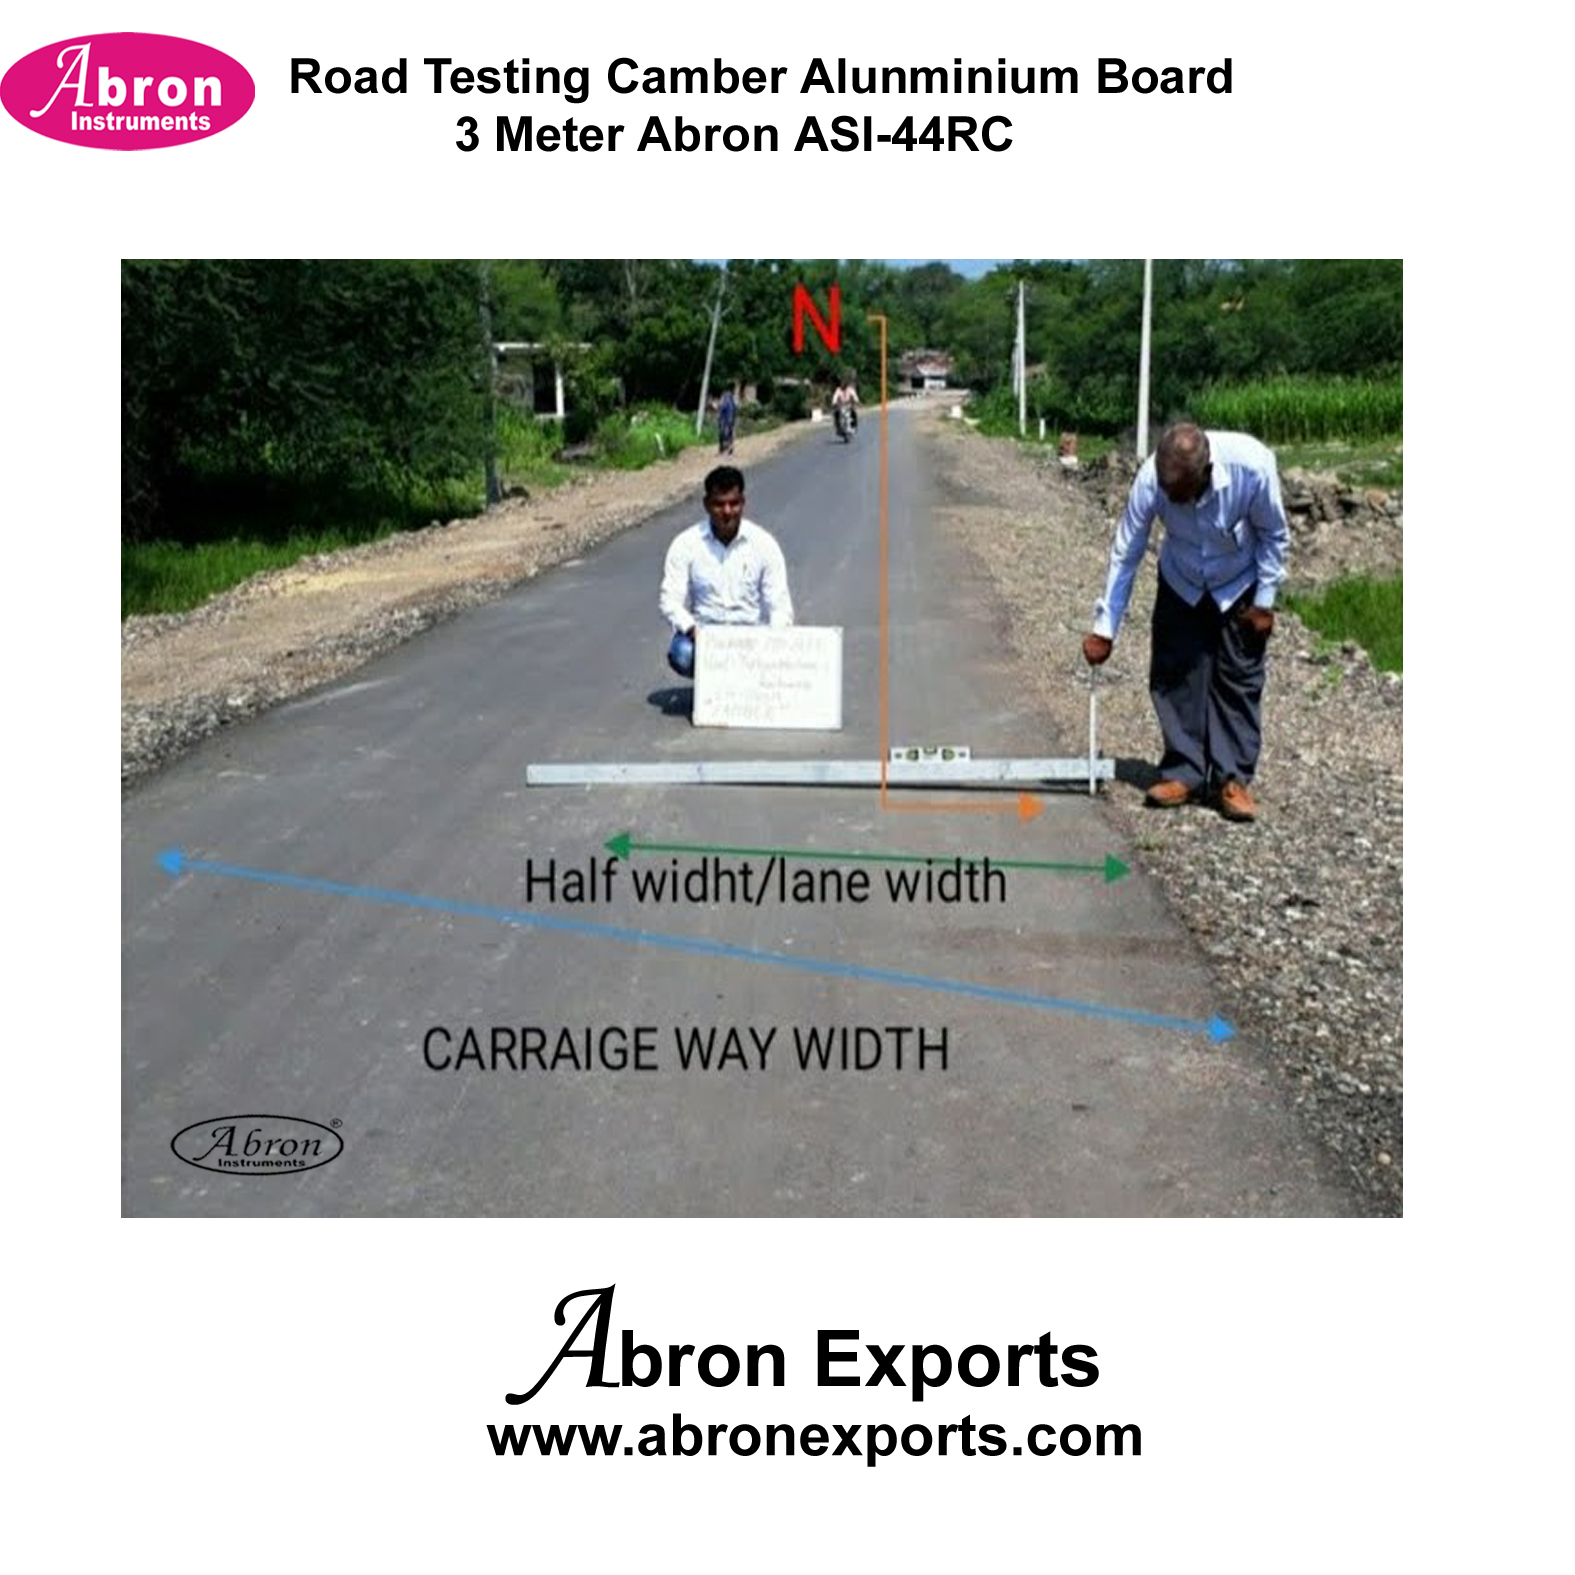 Road Testing Camber Alunminium Board 3 Meter Abron1 ASI-44RC 